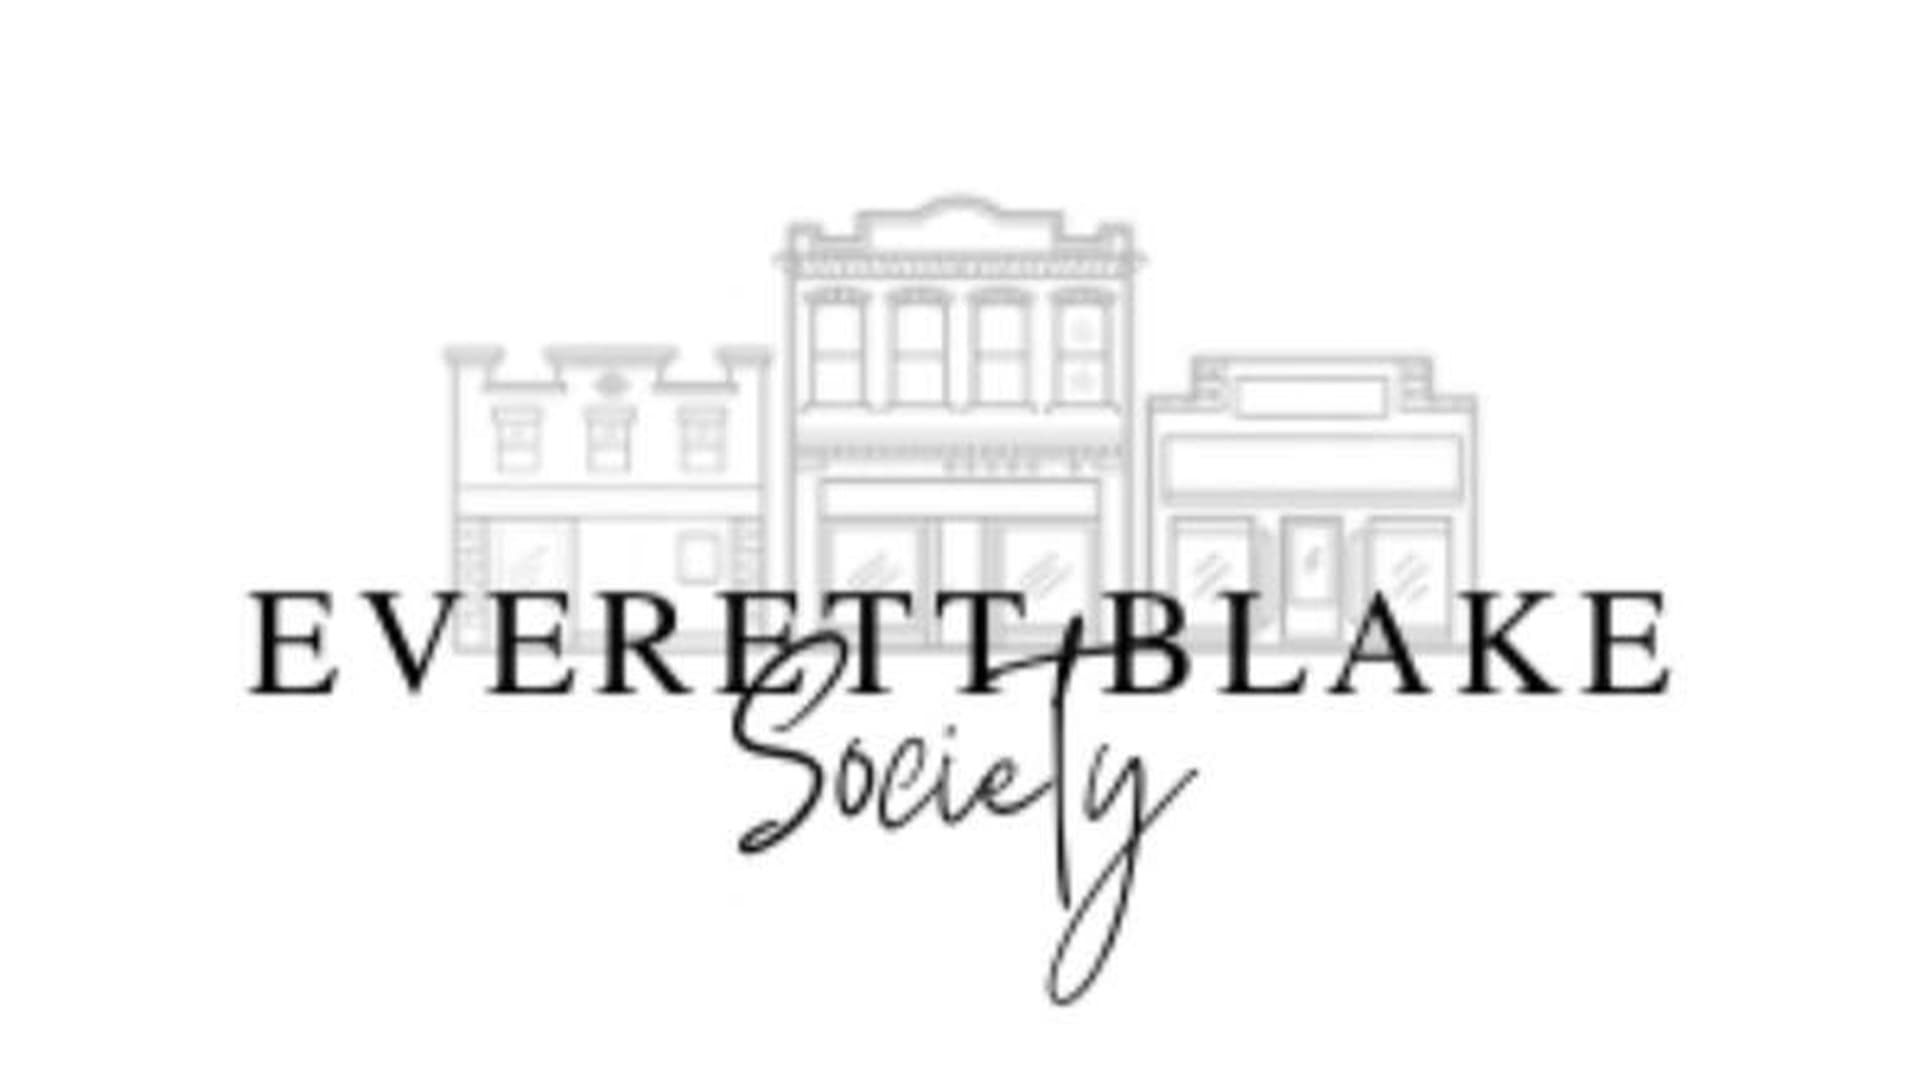 Everett Blake Society